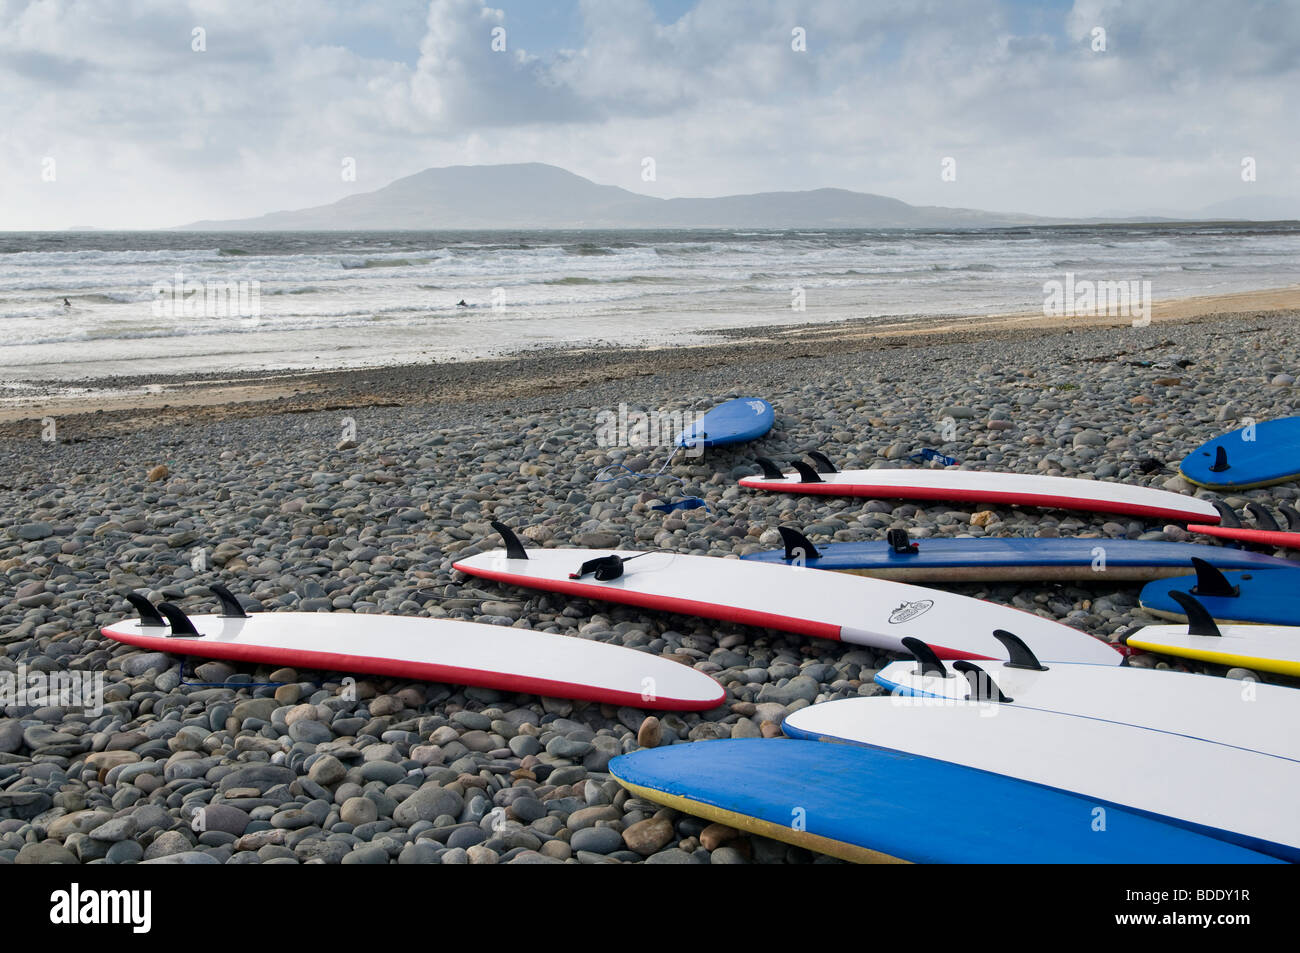 Surfboards on Carrowniskey Beach, county Mayo, Ireland Stock Photo